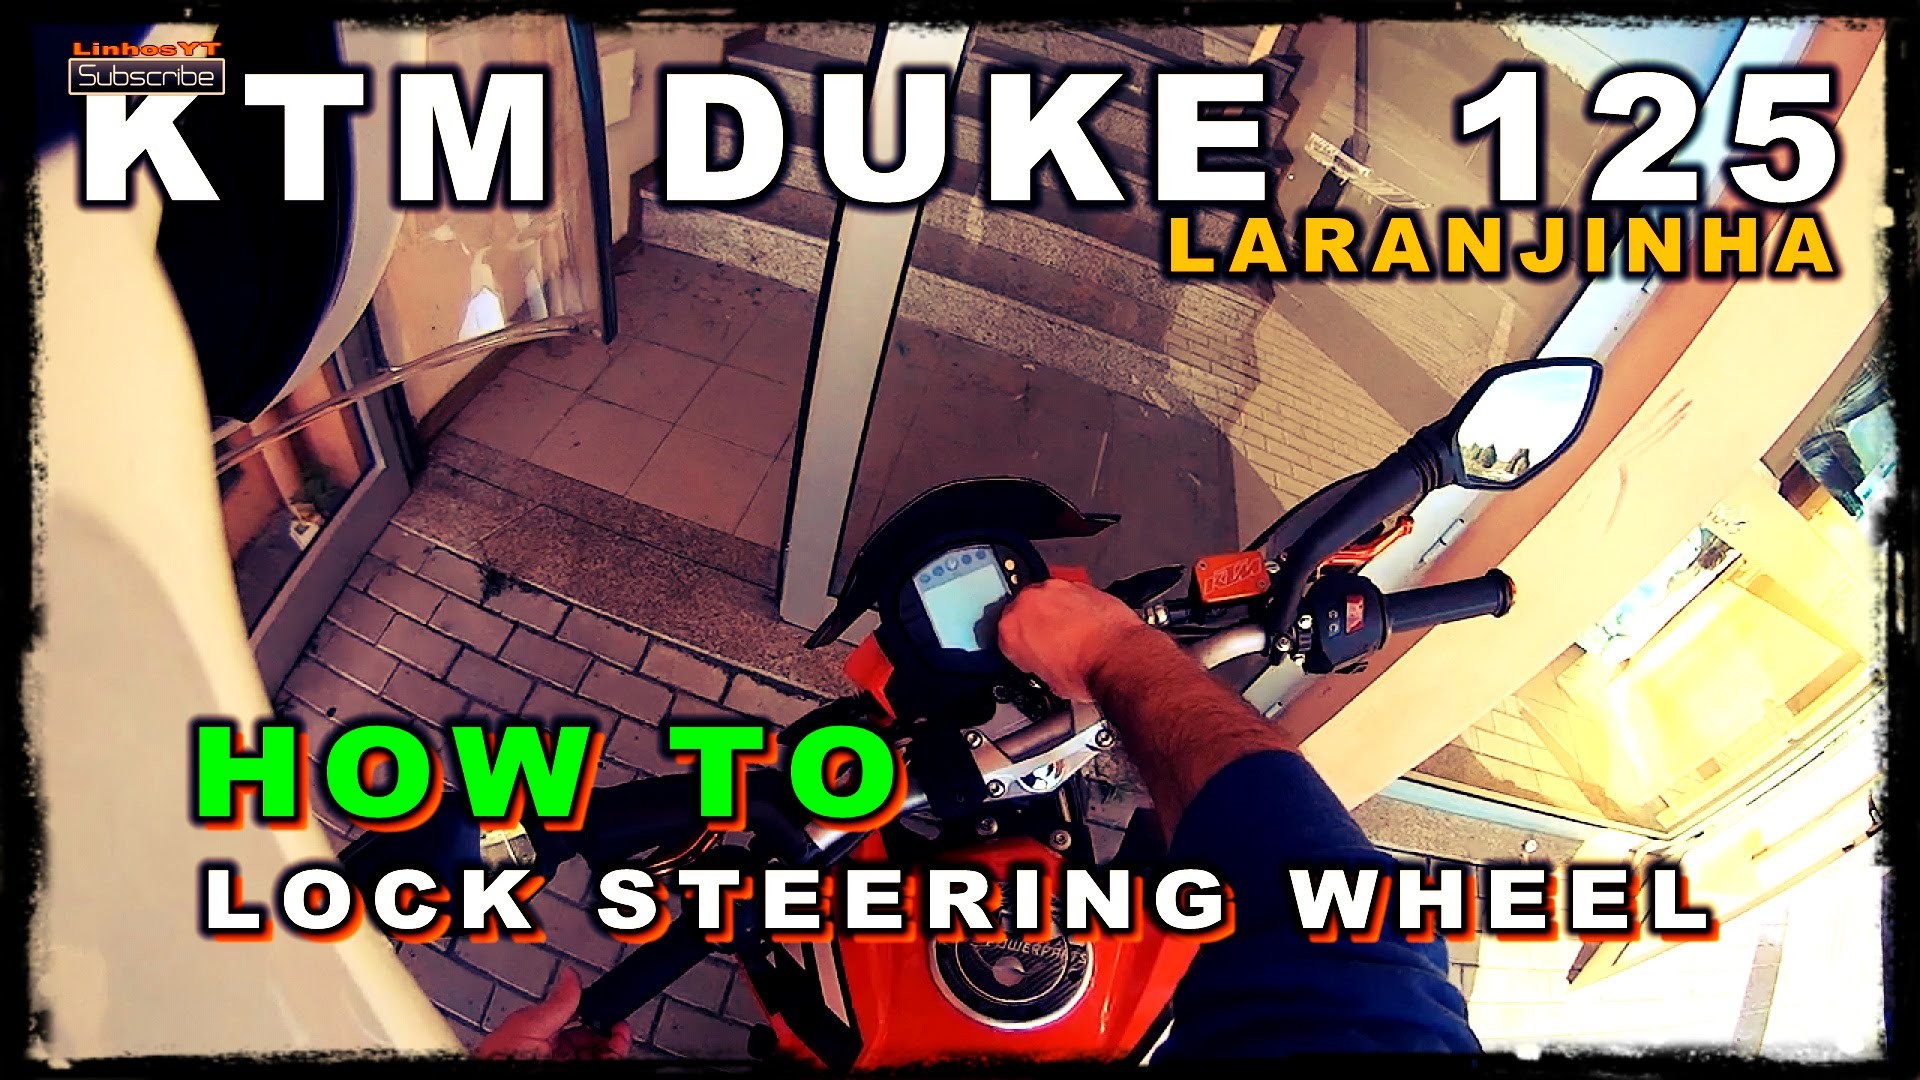 DIY Help Tutorial: How to Steering Wheel Lock on Moto KTM Duke 125, Step-by-Step Motorcycle Lock Tut